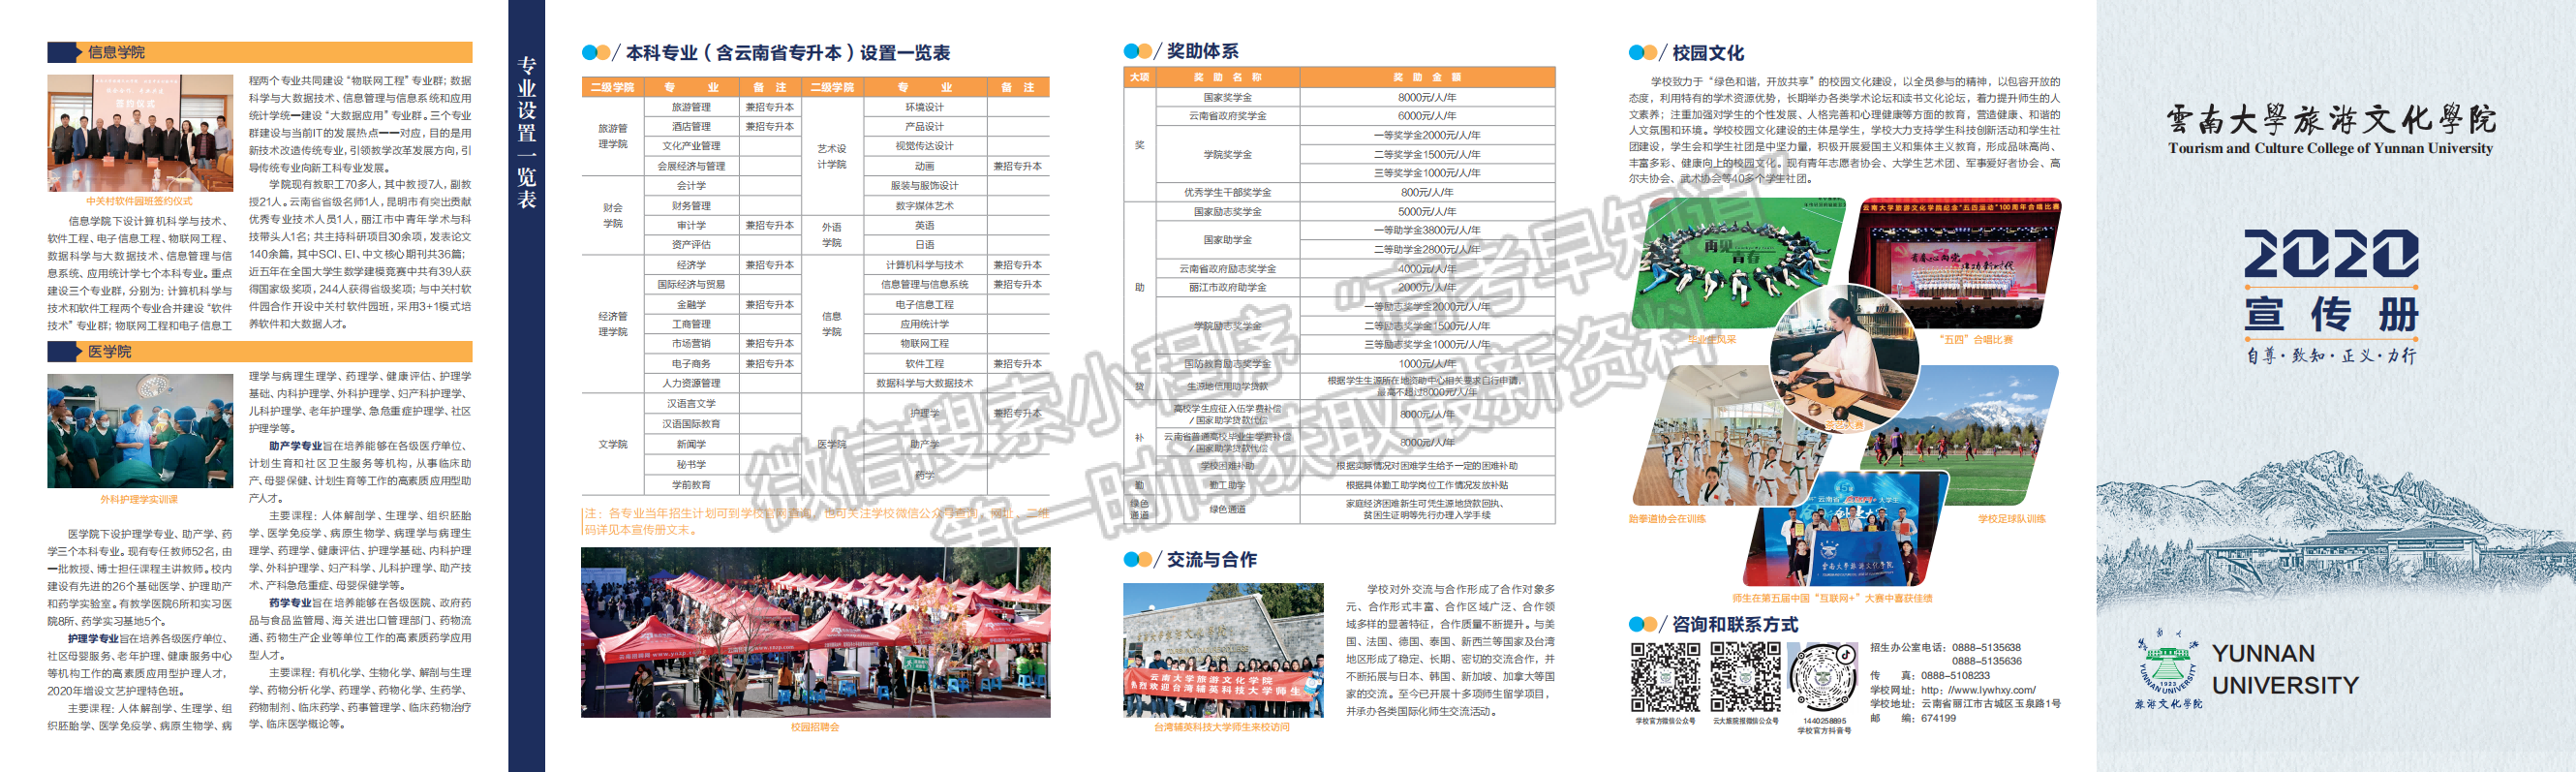 云南大学旅游文化学院2020年招生宣传册